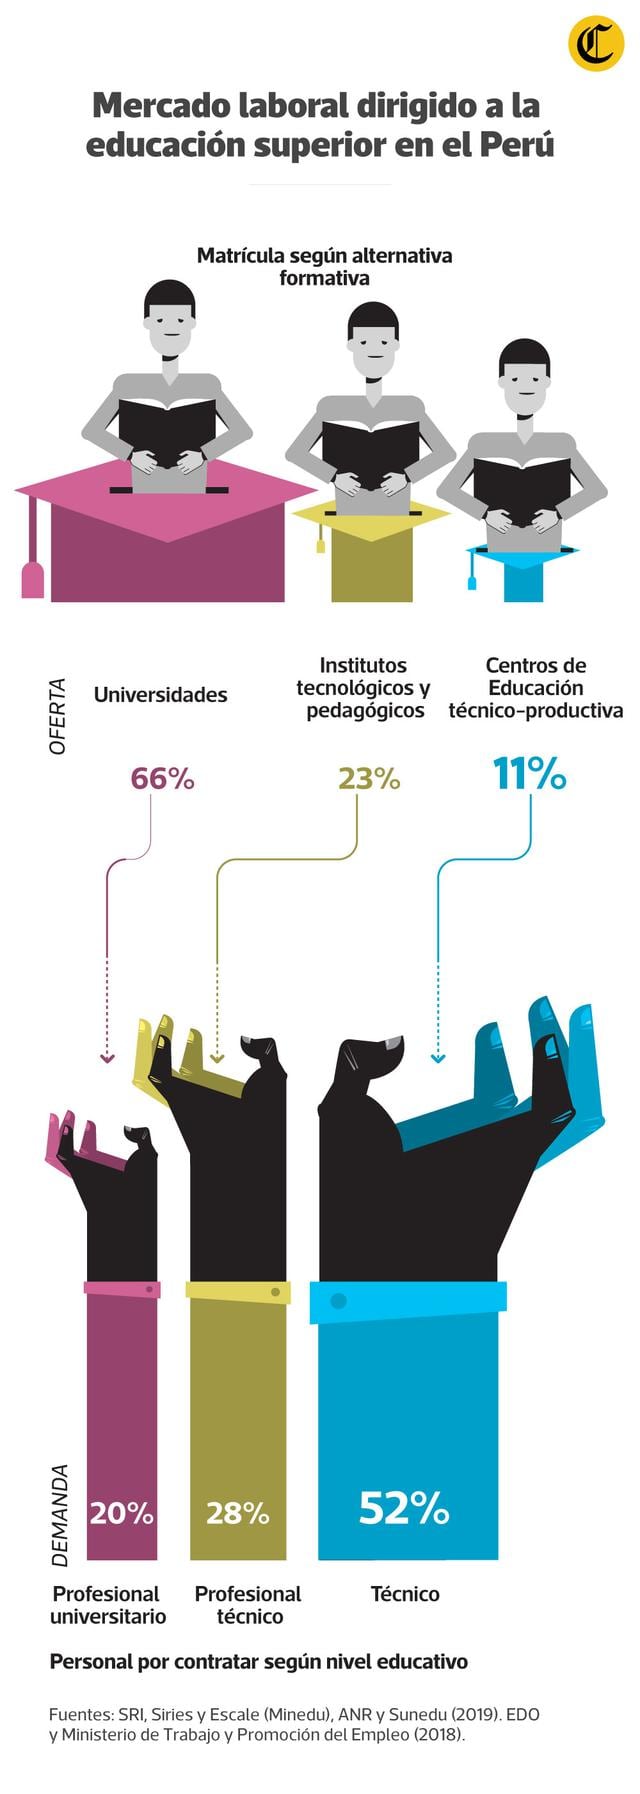 Mercado laboral dirigido a la educación superior en el Perú. (Infografía: El Comercio)